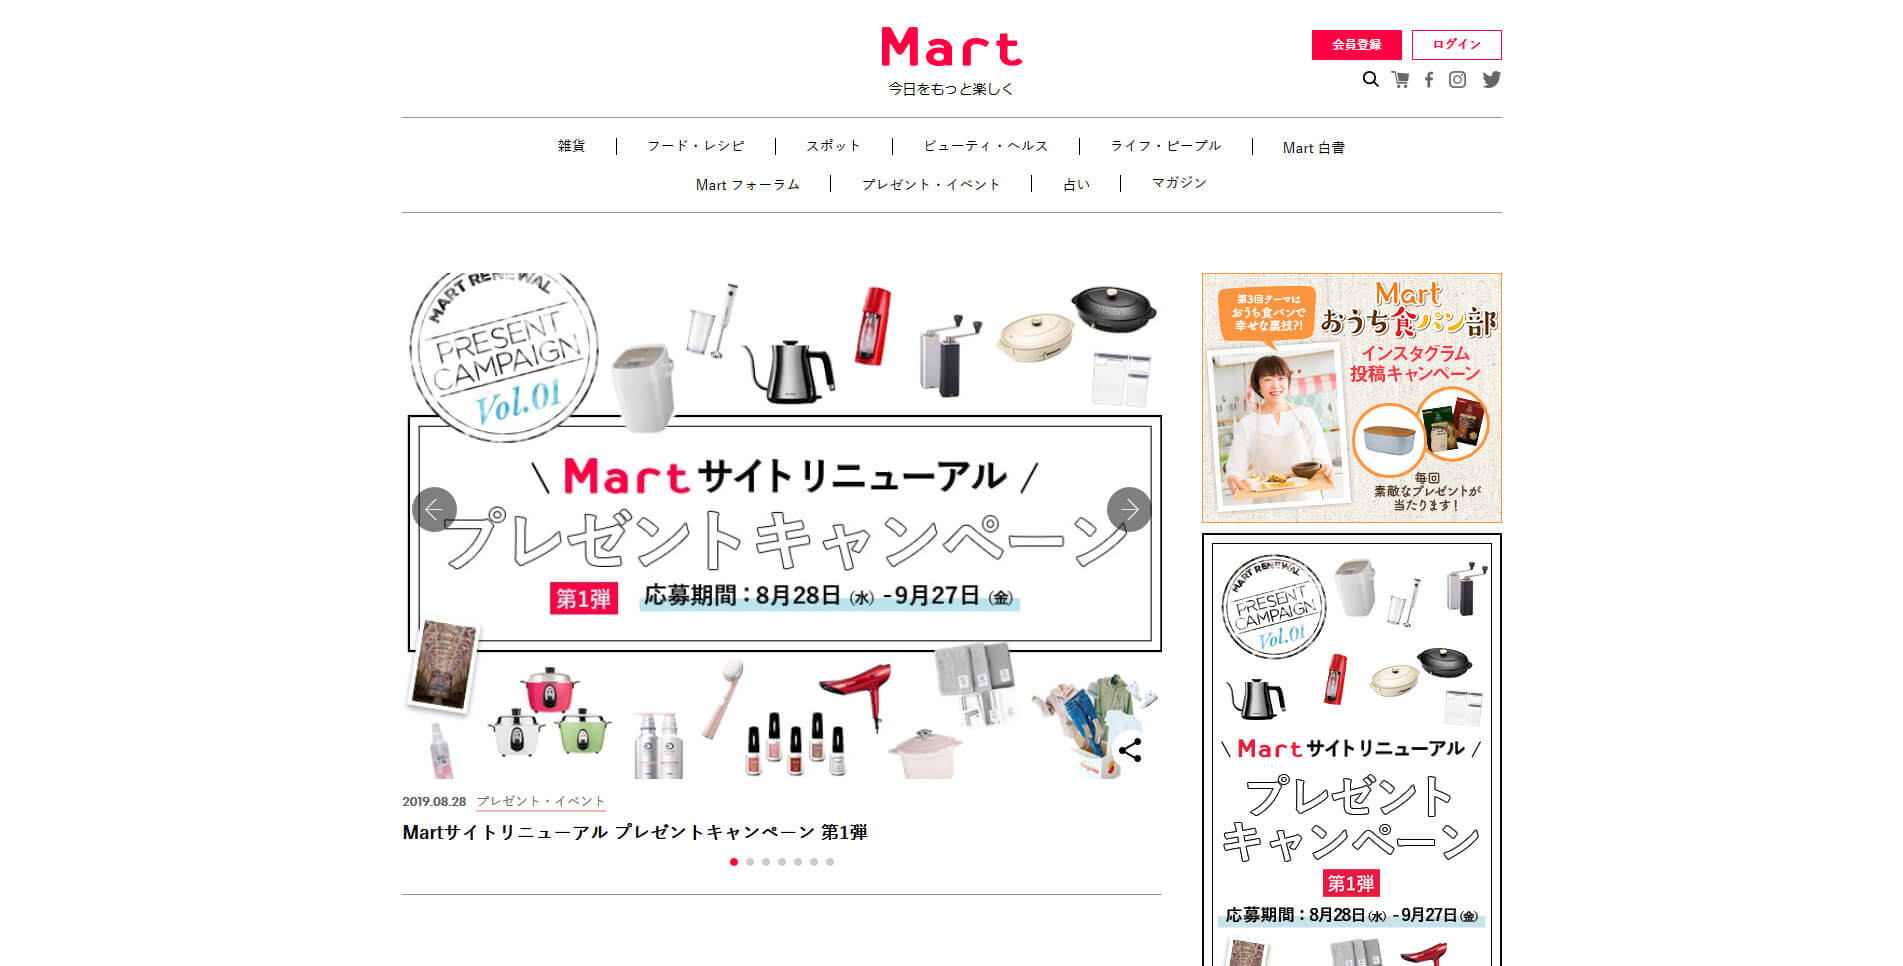 【最新】勝手にホームページリニューアル分析〜Mart web編〜